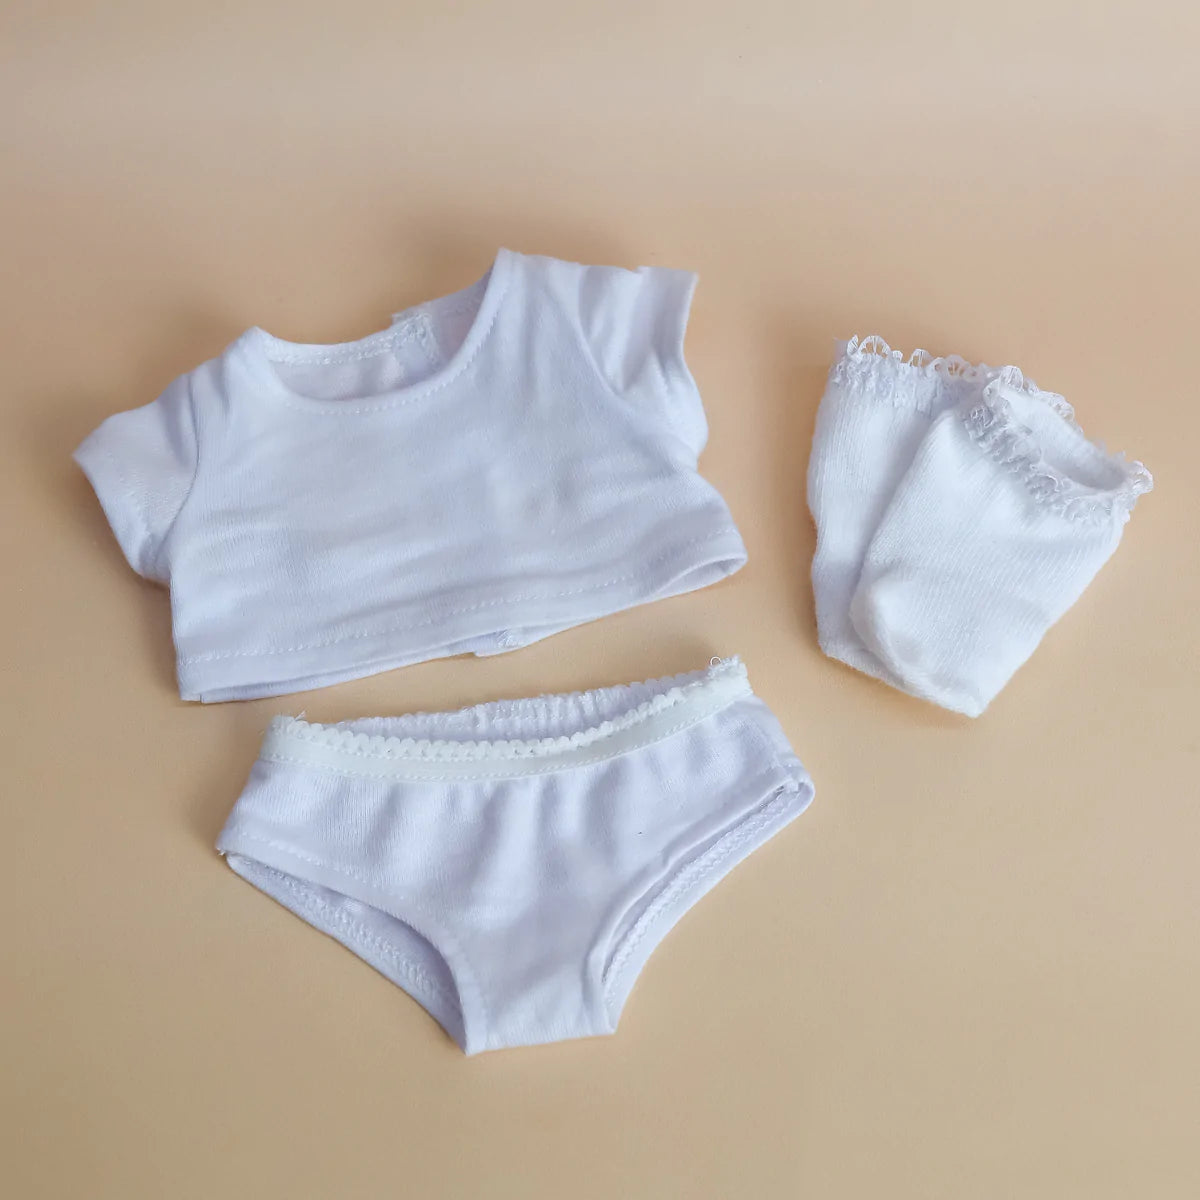 Tiny Harlow- Tiny Threads underwear set – The Mini Co.